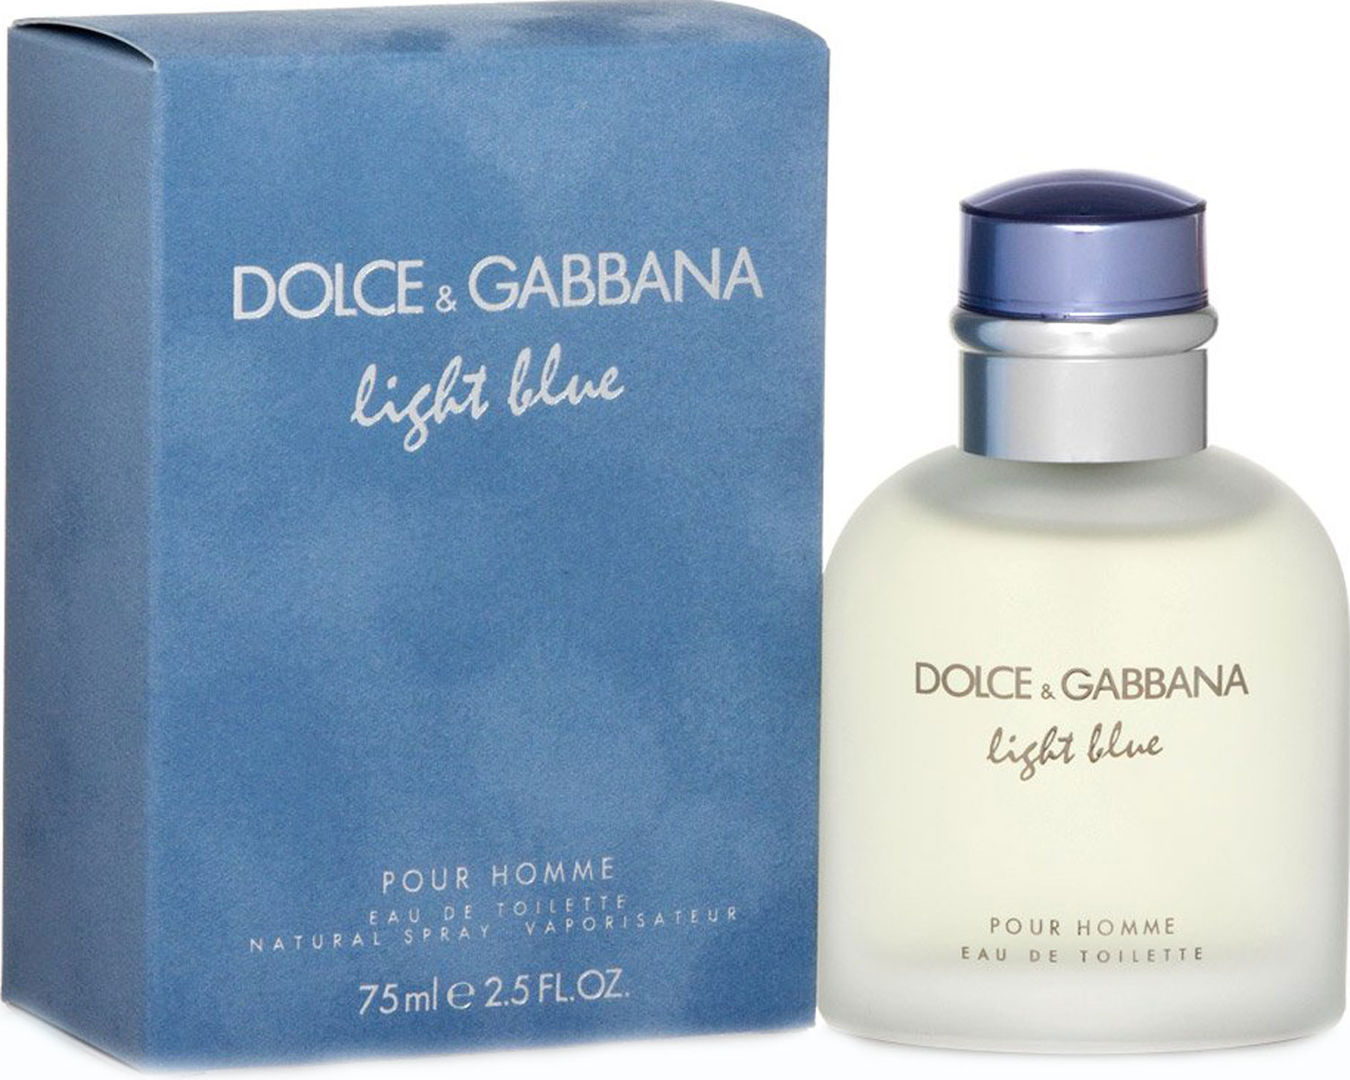 Дольче габбана для мужчин. Духи Дольче Габбана Лайт Блю. Light Blue Dolce & Gabbana, 100ml, EDT. Дольче Габбана Light Blue pour homme 125. Dolce&Gabbana Light Blue туалетная вода 100 мл.